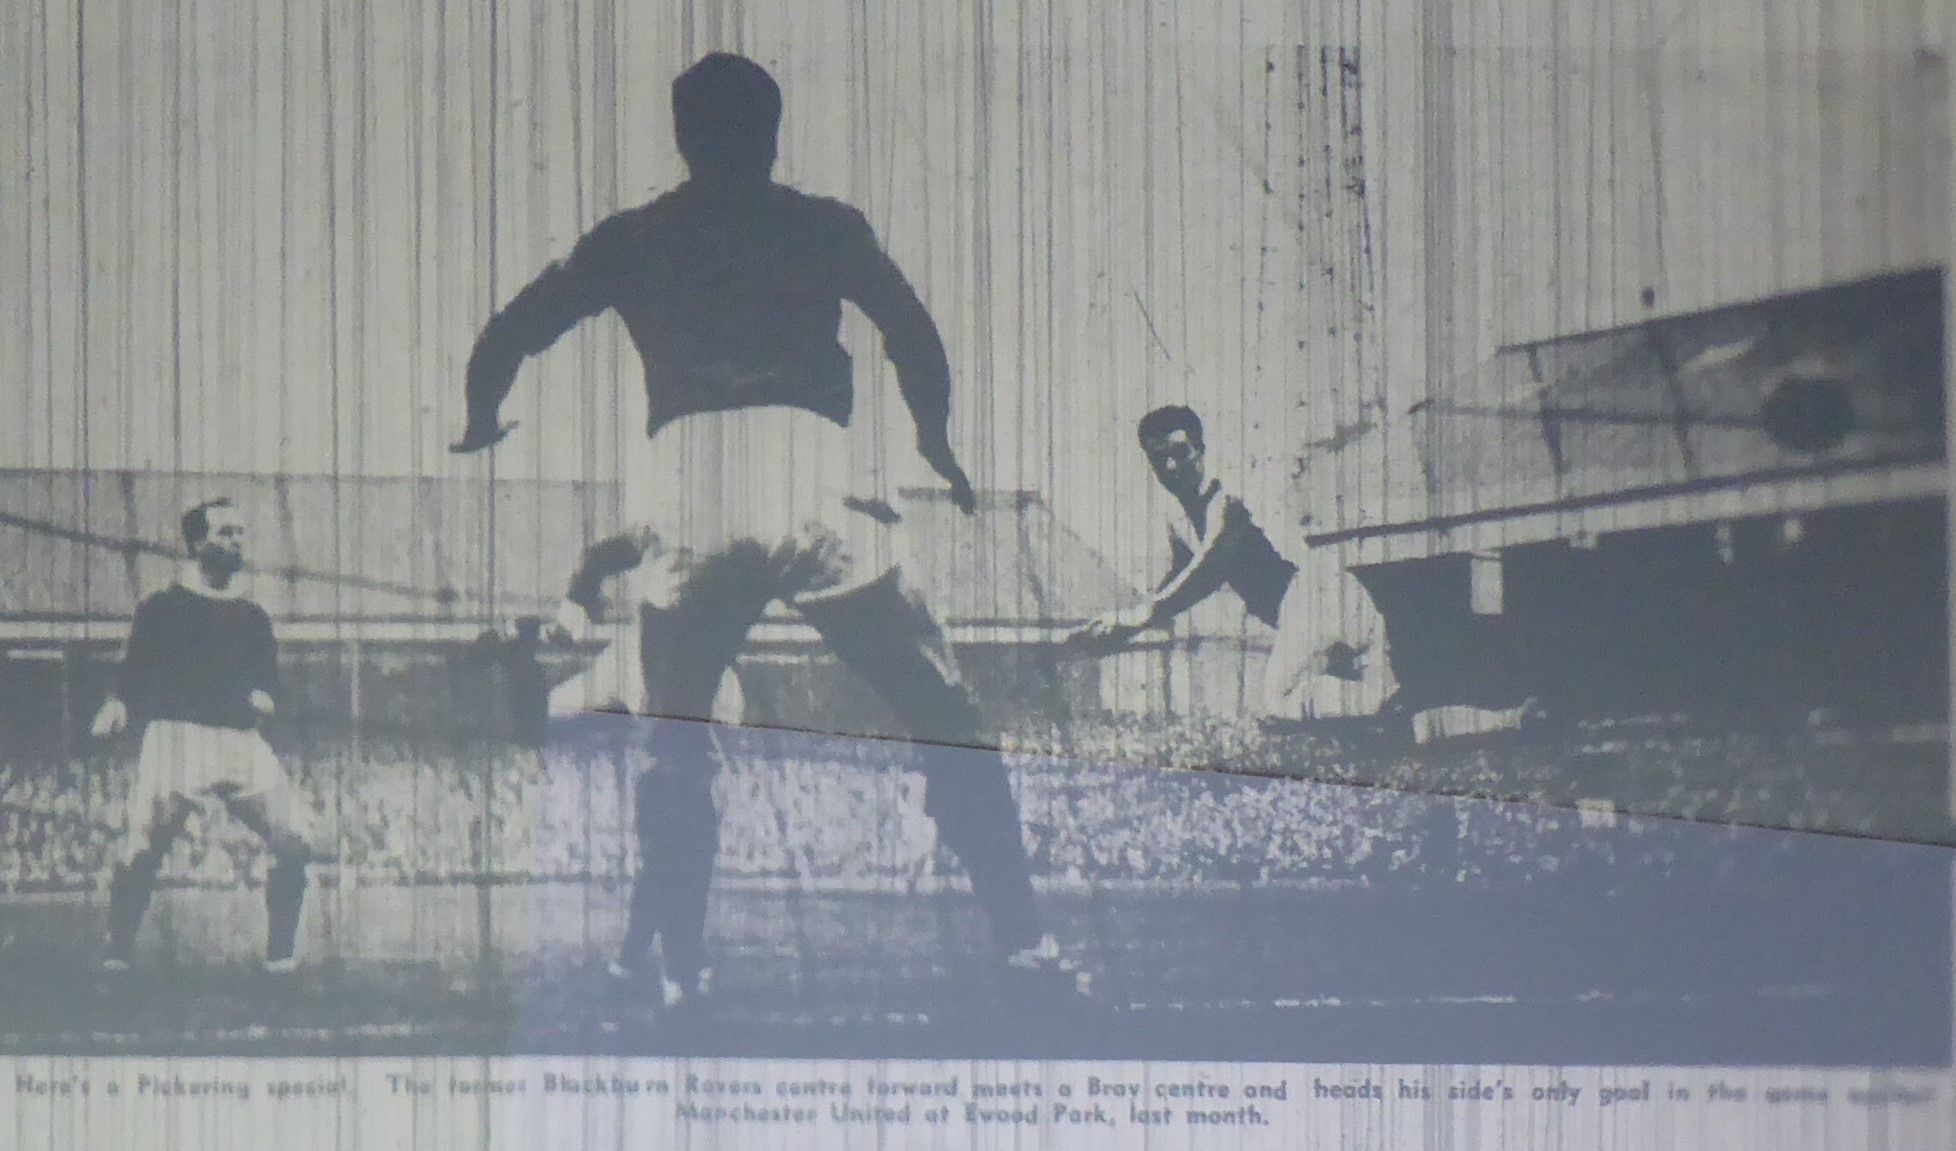 P1010113 1964 Fred Pickering scores for Blackburn against Man.Utd. just before he signed for t...JPG